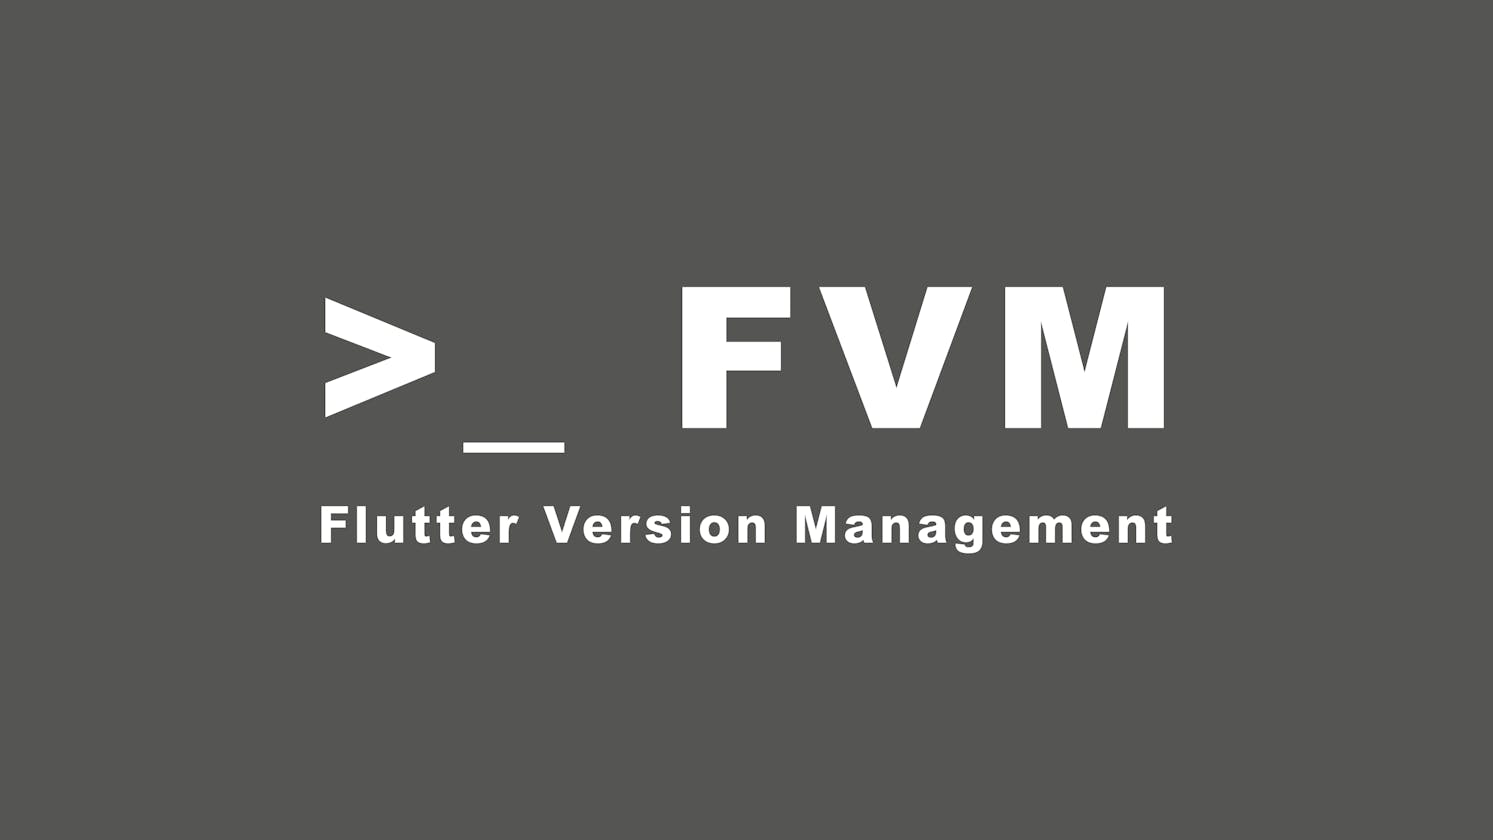 FVM - Flutter Version Management, Managing multiple versions in a flutter